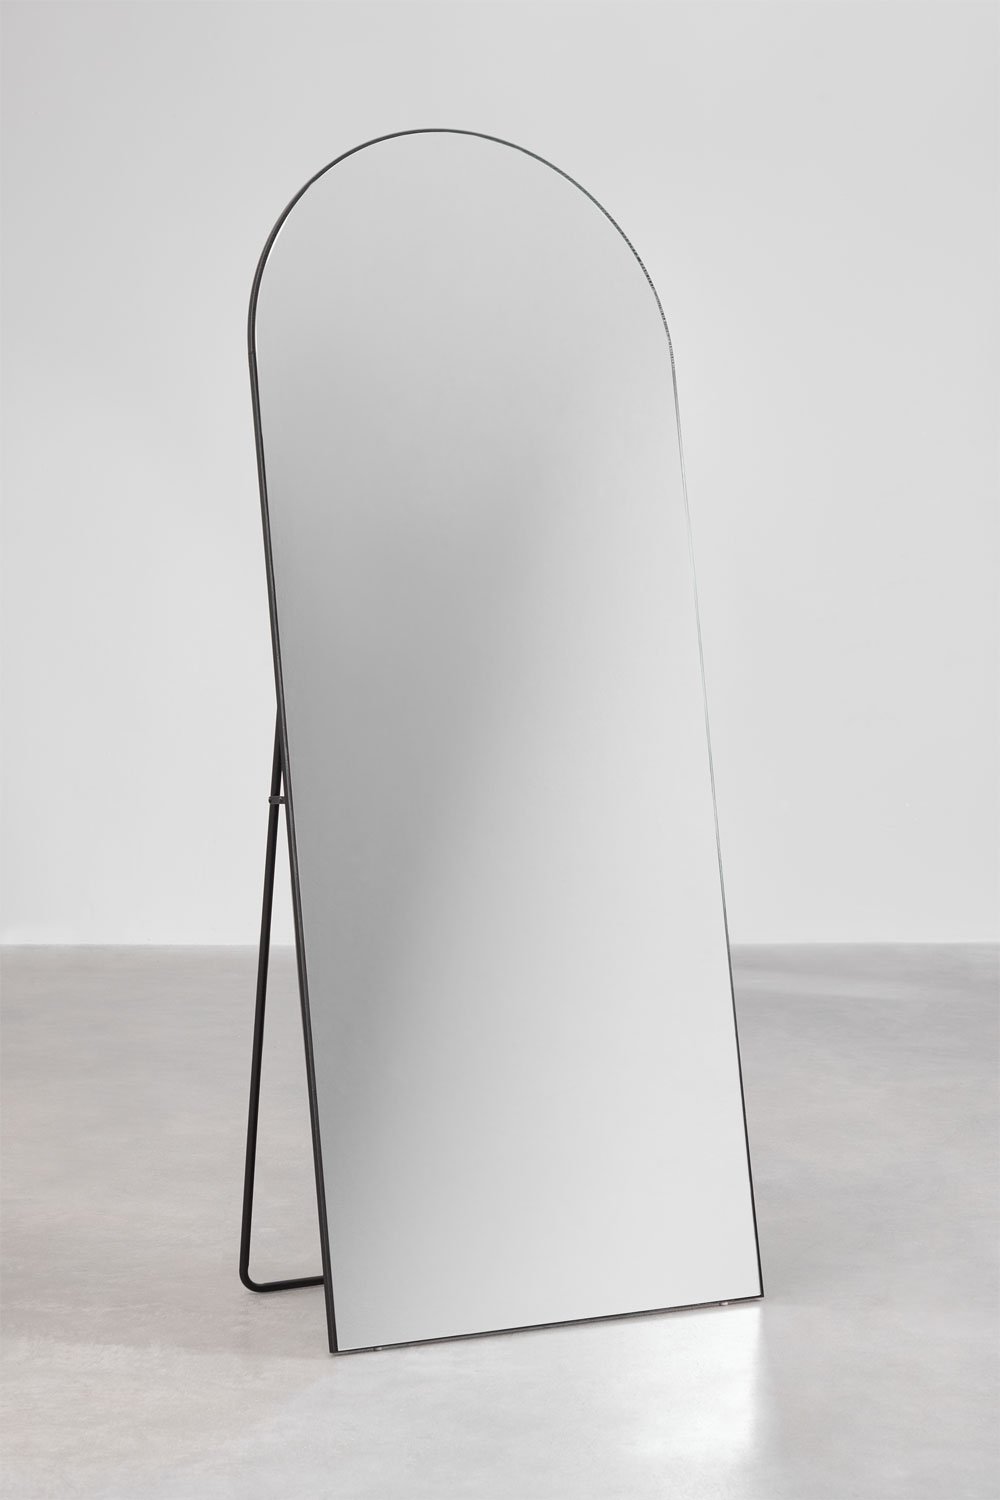 Miroir sur pied en MDF (80x200 cm) Eigil, image de la galerie 1